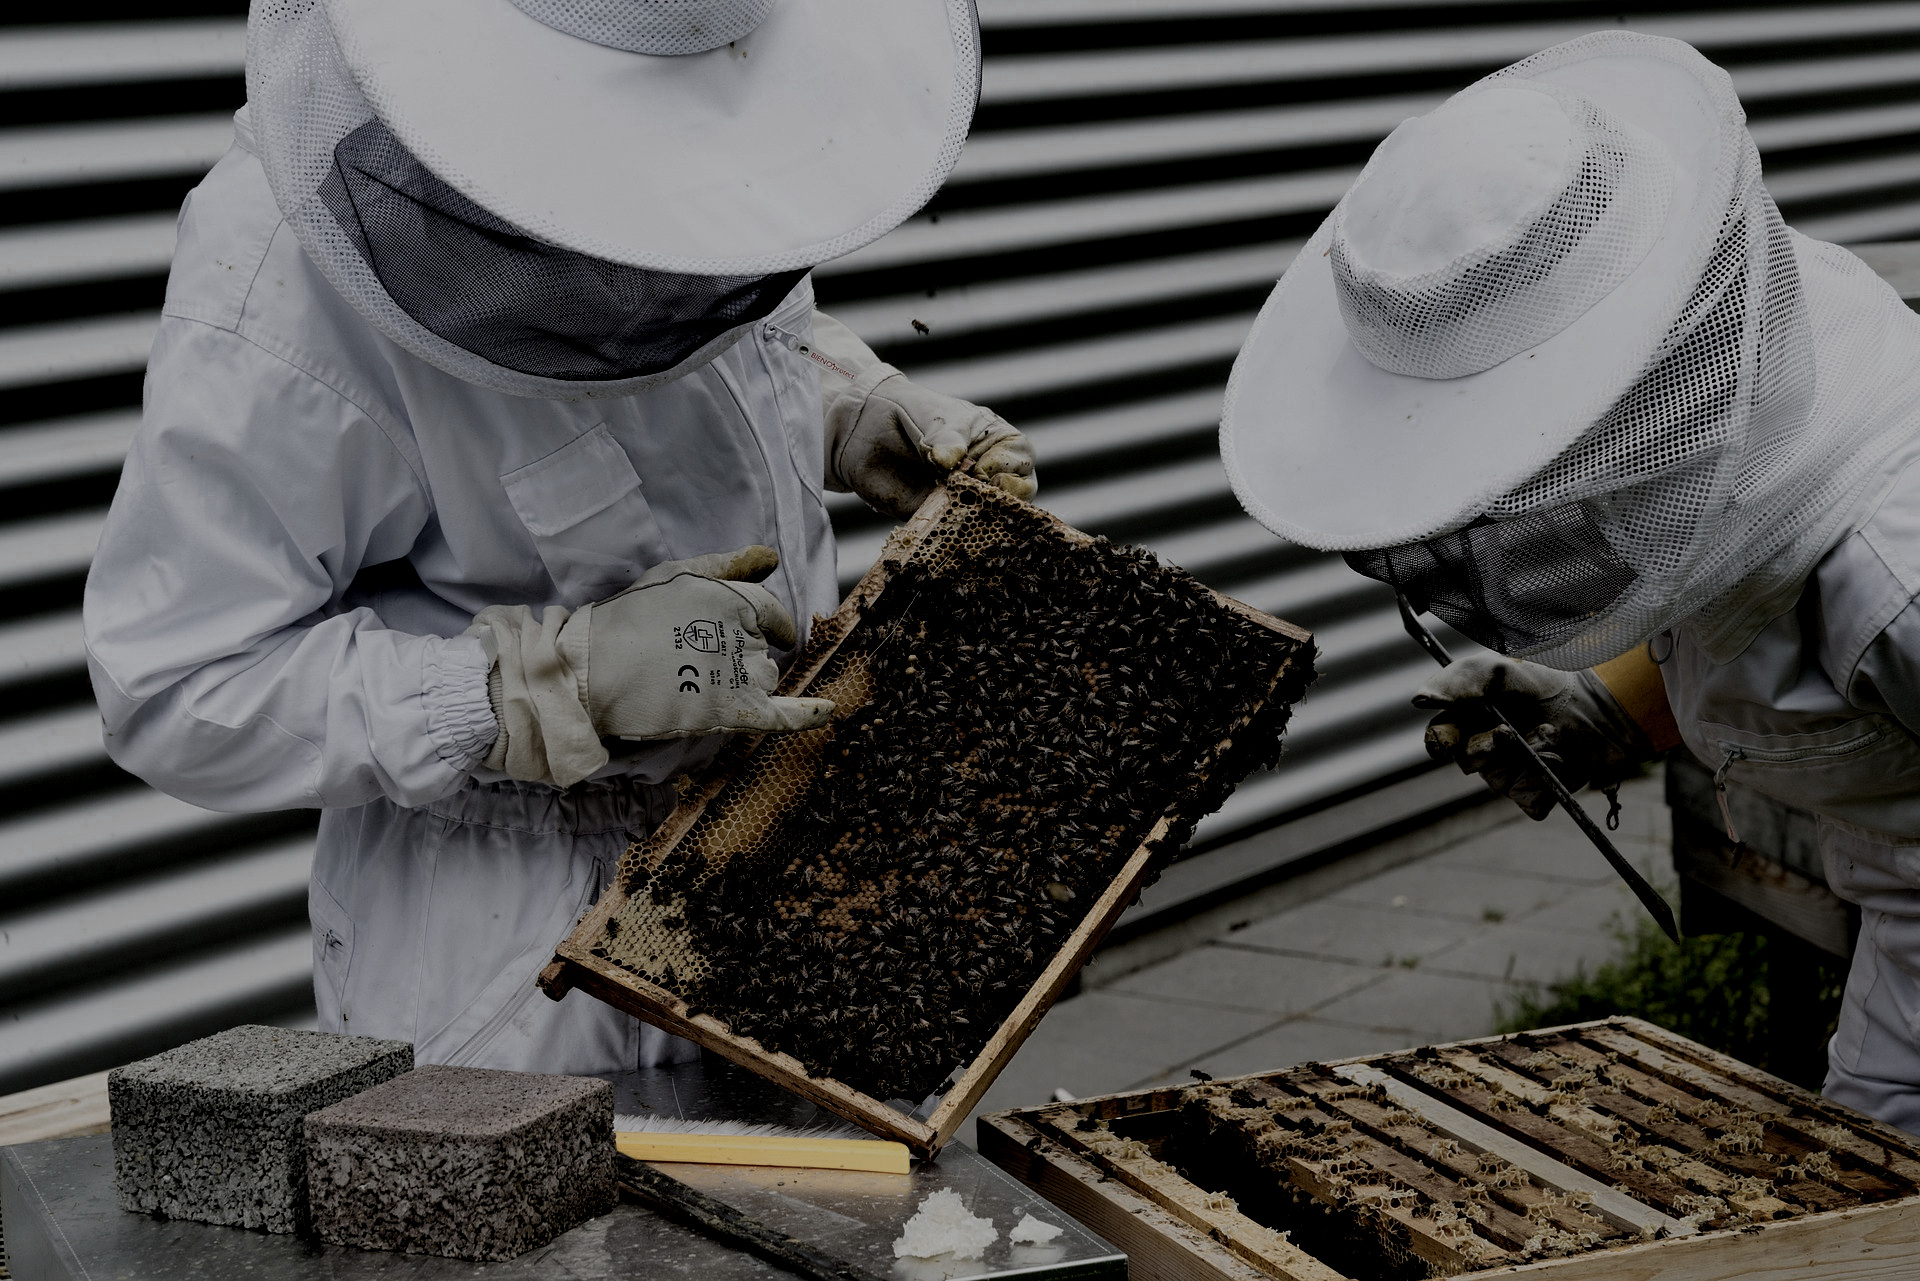 "Bienen werden heutzutage vermehrt in Großstädten gehalten, während auf dem Land die Bestäubungsleistung fehlt."